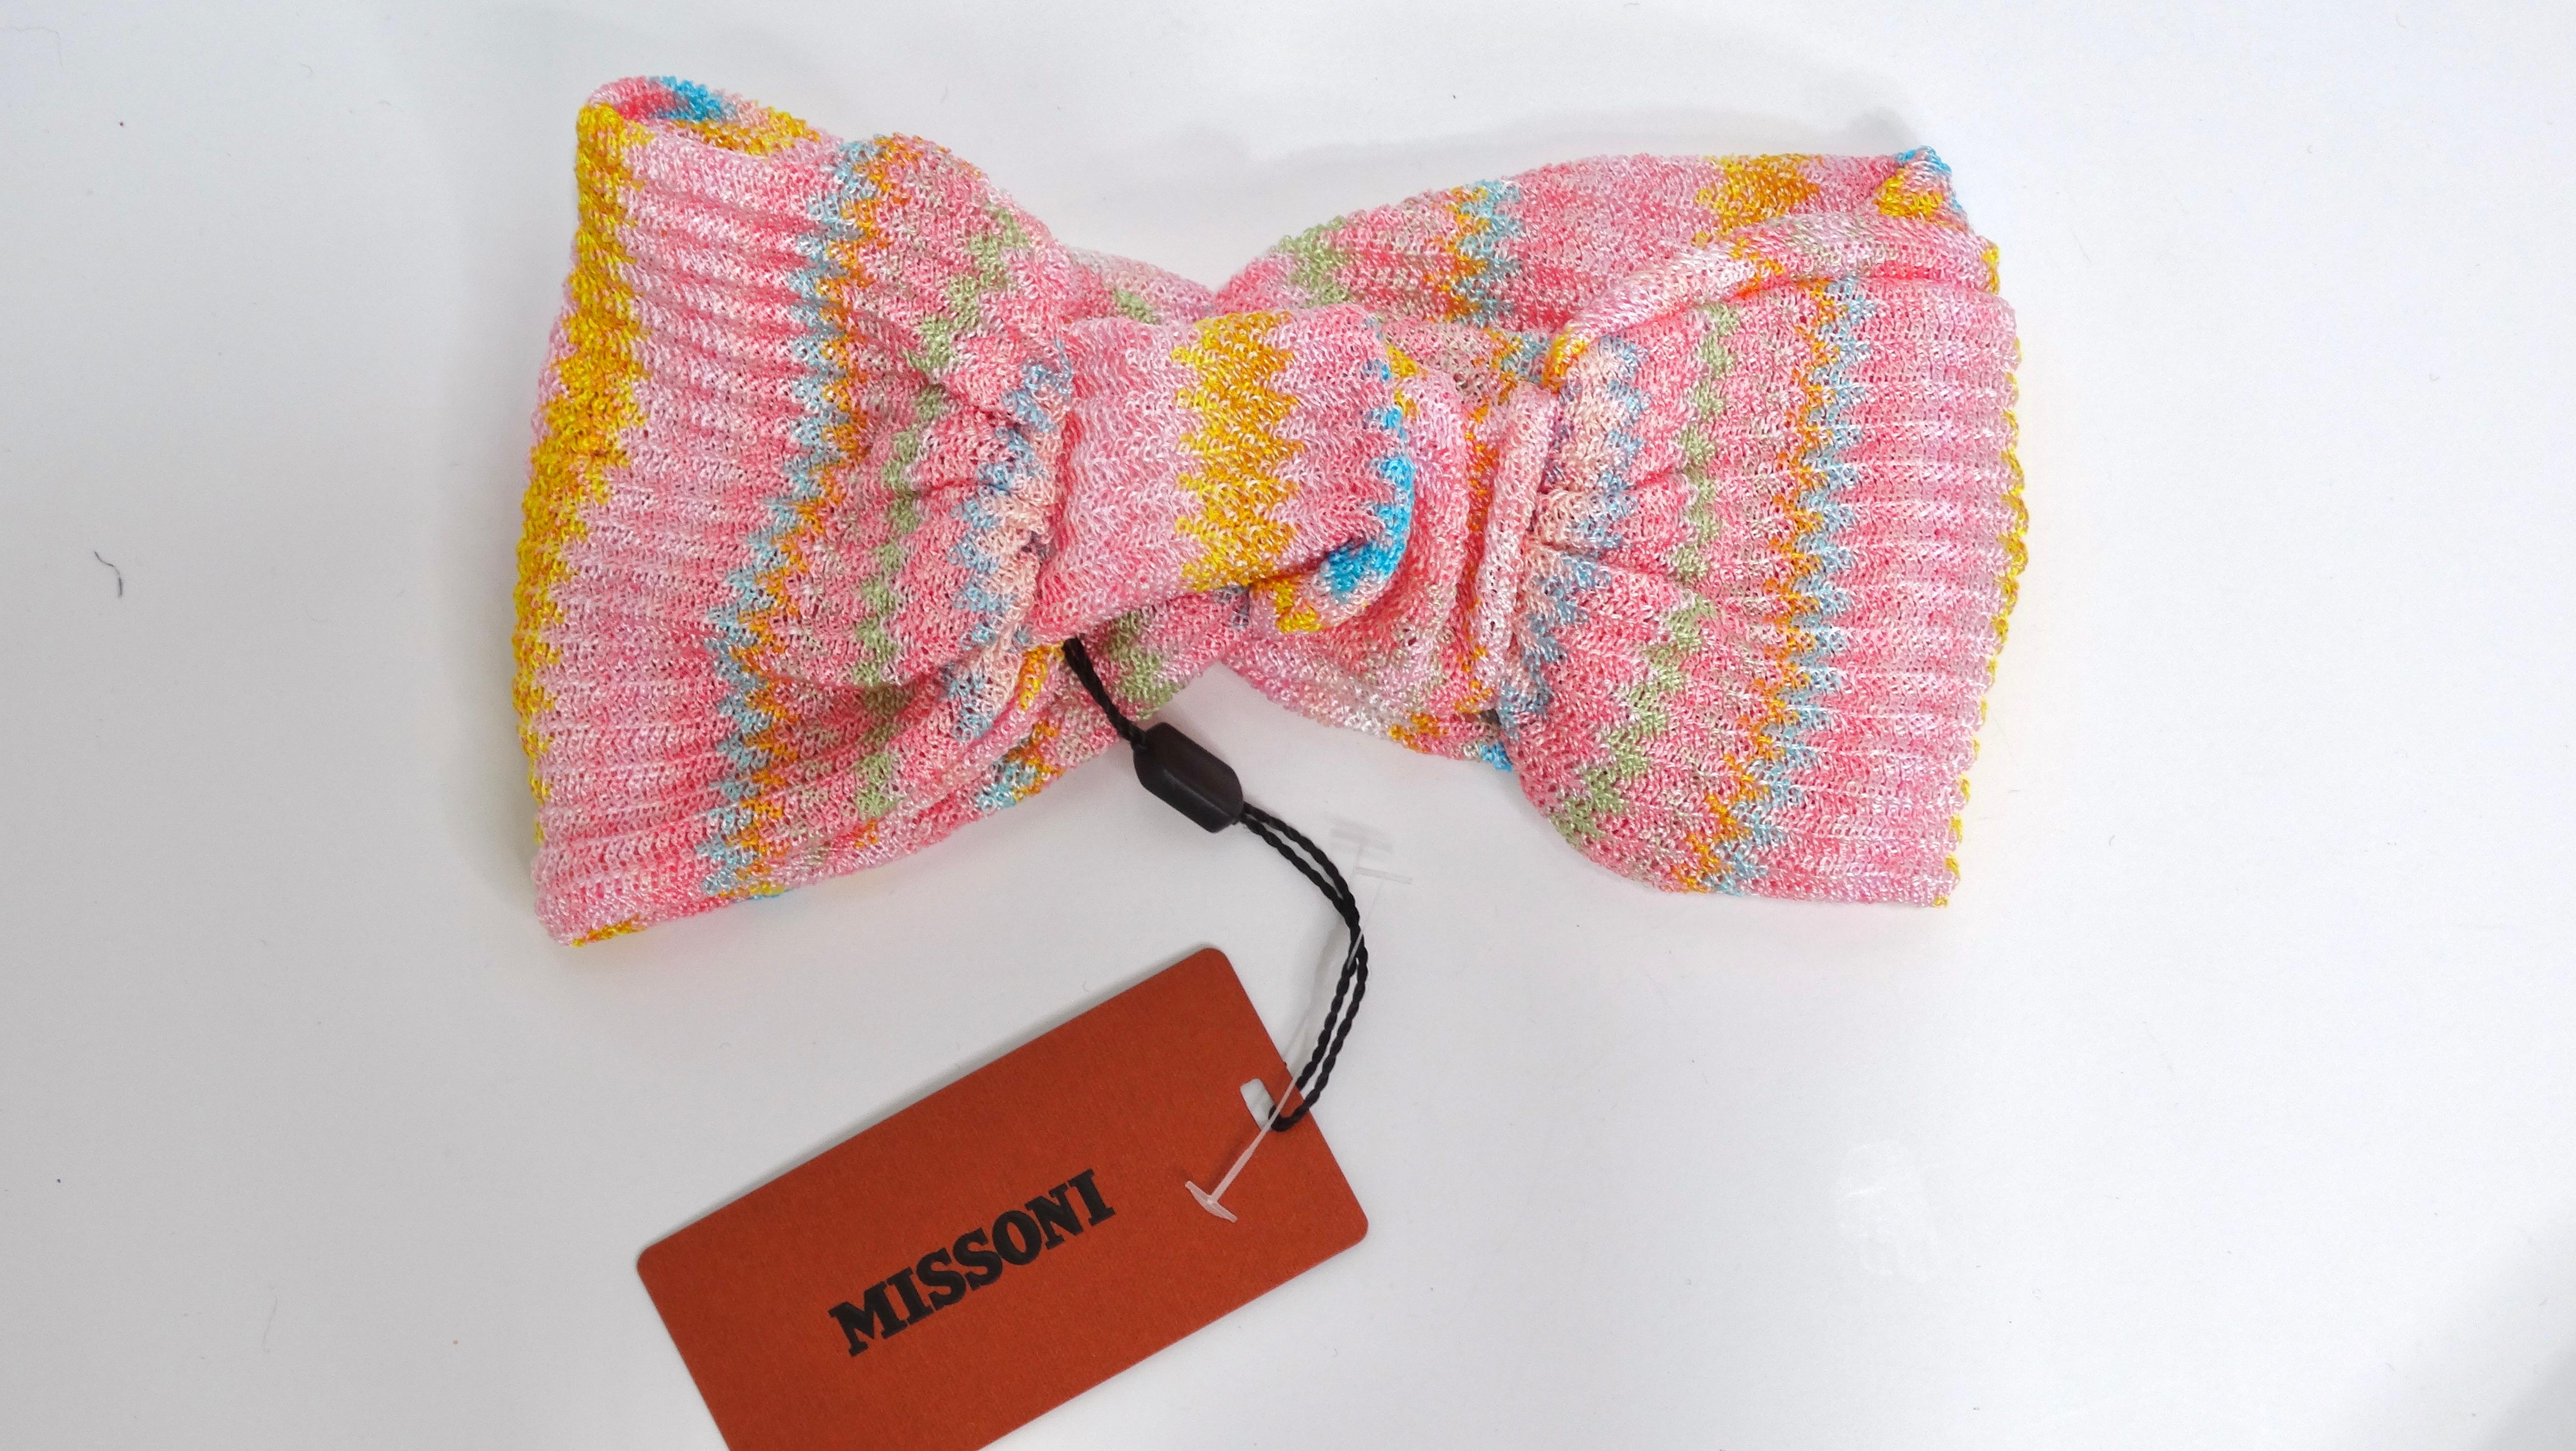 Dieses mehrfarbige, geknotete Stirnband von MISSONI ist mit dem charakteristischen Chevron-Muster versehen, das die schicke und trendige Missoni-Handschrift trägt. Dieses Designer-Accessoire ist das perfekte Sommerzubehör für Ihre Garderobe. Dieses